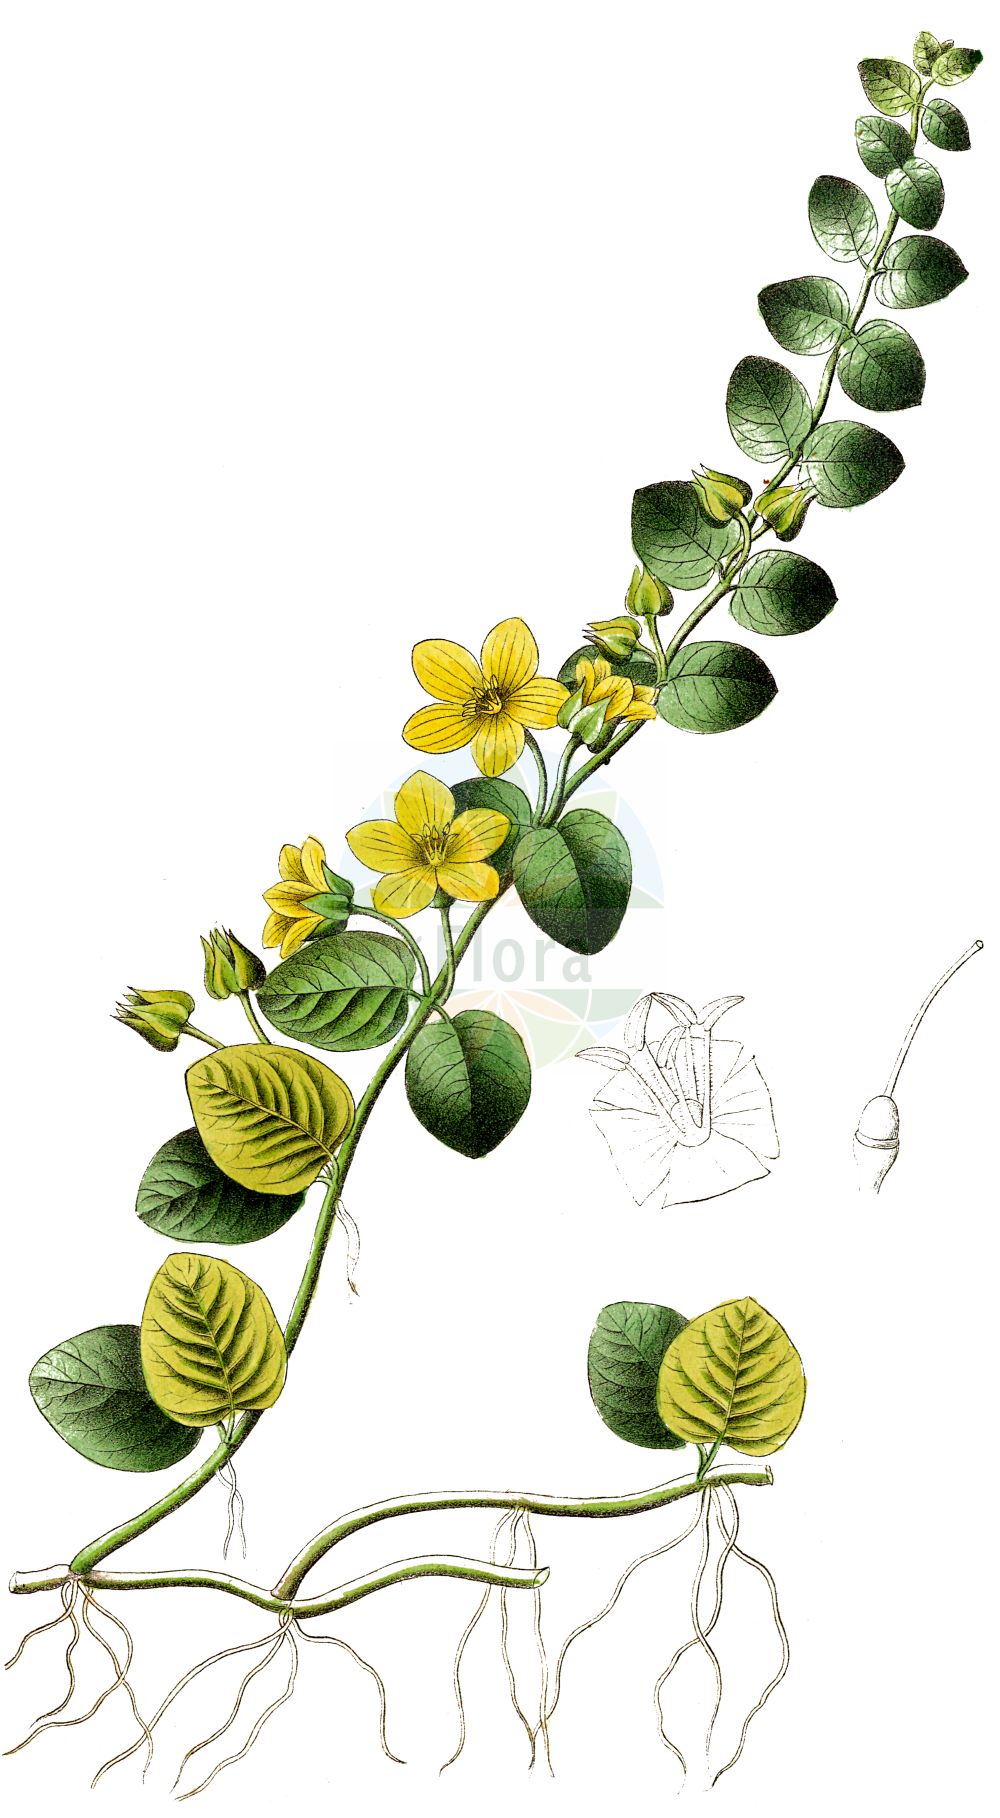 Historische Abbildung von Lysimachia nummularia (Pfennigkraut - Creeping-Jenny). Das Bild zeigt Blatt, Bluete, Frucht und Same. ---- Historical Drawing of Lysimachia nummularia (Pfennigkraut - Creeping-Jenny). The image is showing leaf, flower, fruit and seed.(Lysimachia nummularia,Pfennigkraut,Creeping-Jenny,Lysimachia nummularia,Pfennigkraut,Creeping-Jenny,Moneywort,Twopenny Grass,Lysimachia,Gilbweiderich,Yellow Loosestrife,Primulaceae,Schlüsselblumengewächse,Primrose family,Blatt,Bluete,Frucht,Same,leaf,flower,fruit,seed,Dietrich (1833-1844))